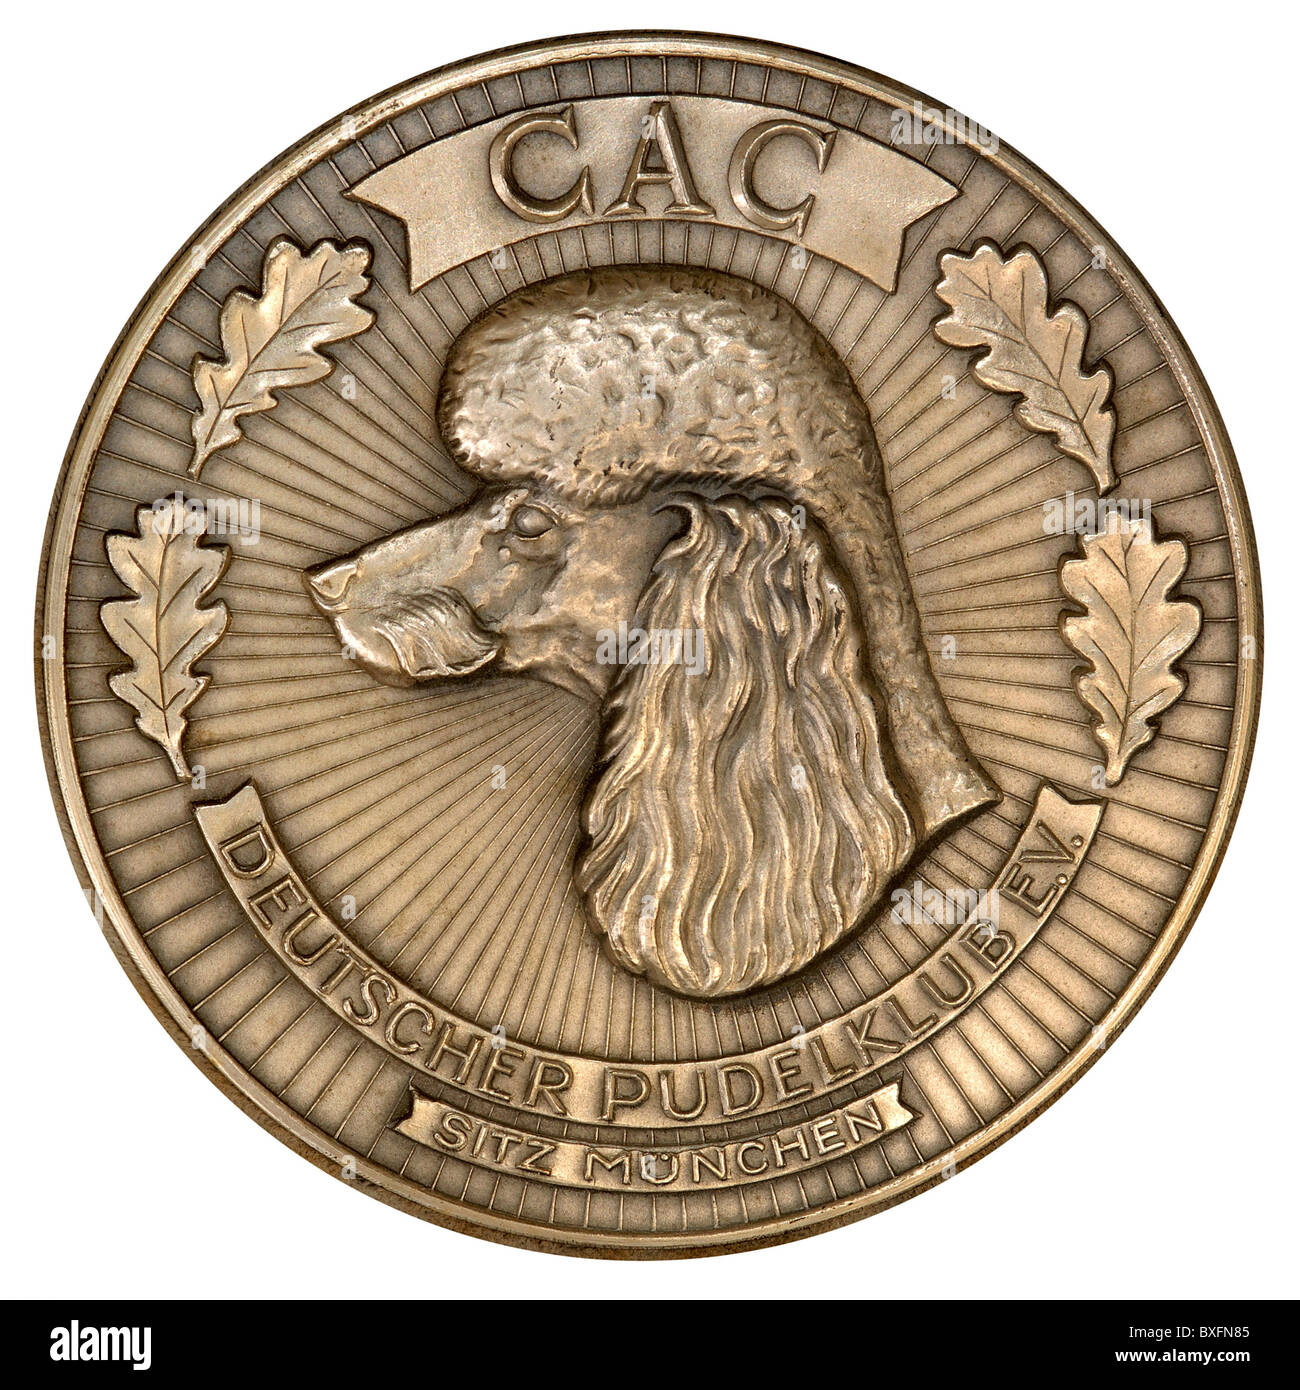 Decorazioni, Germania, medaglia del Club tedesco della poodle, 1970, diritti aggiuntivi-clearences-non disponibile Foto Stock